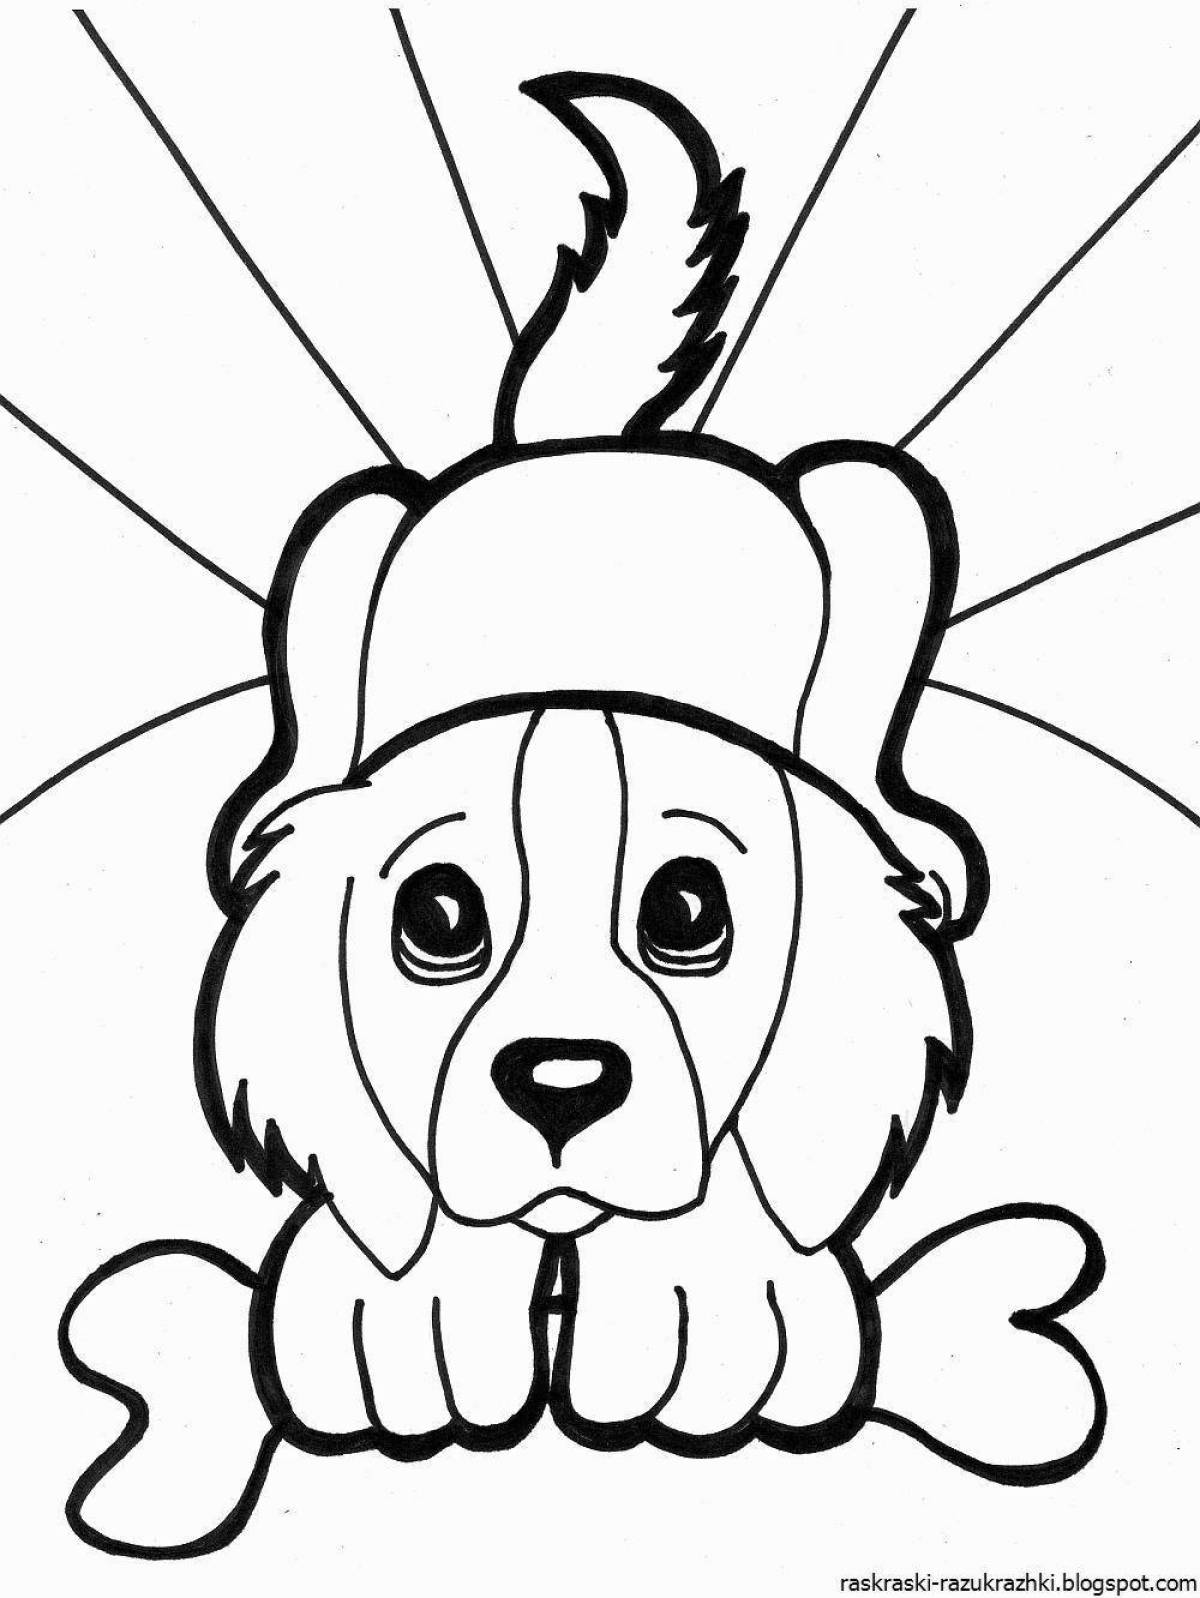 Пушистая раскраска с изображением собаки